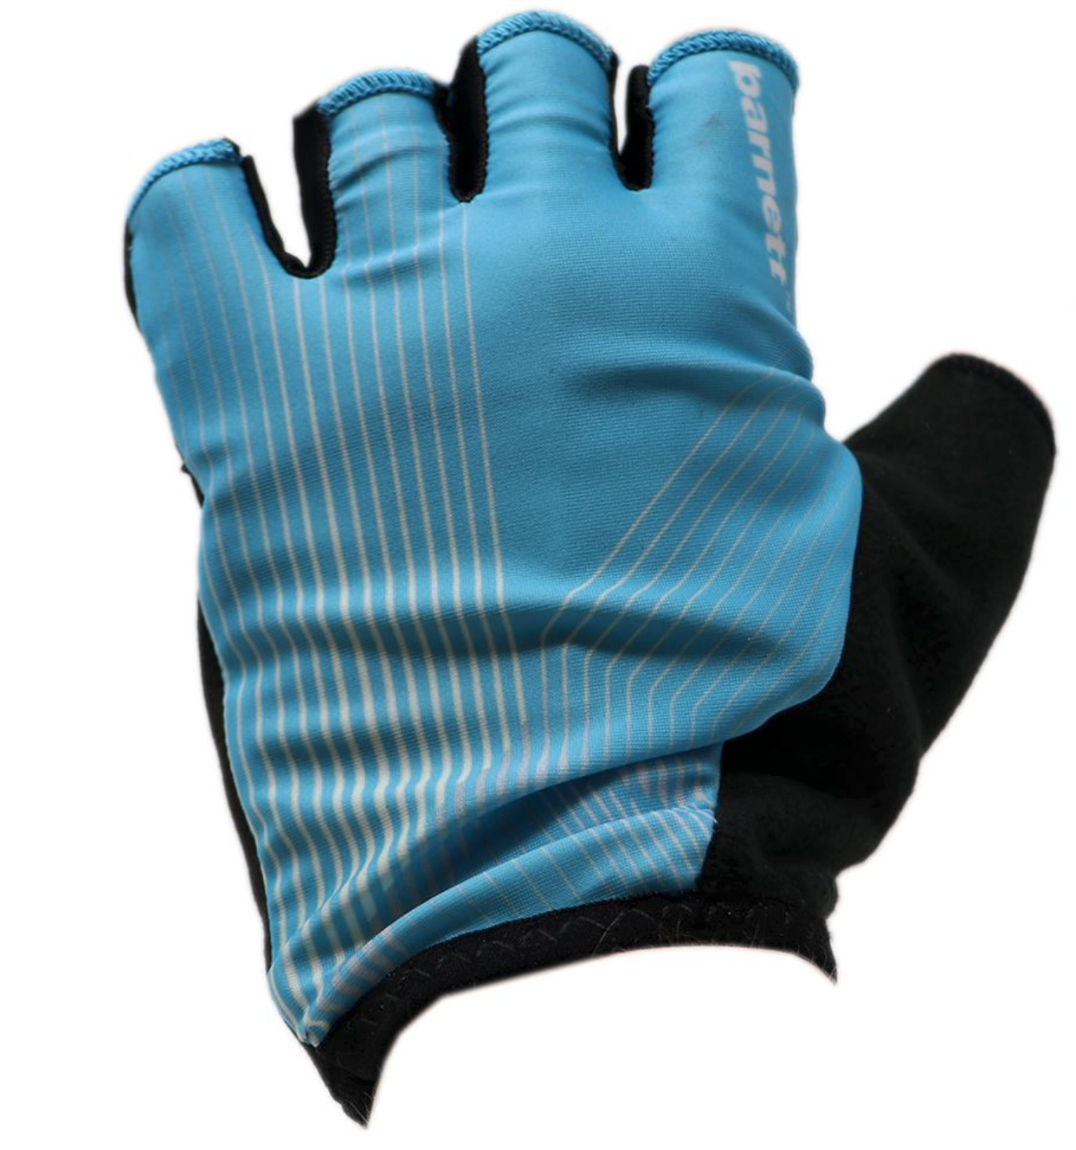 BG-08 Fingerless bike gloves for competitions